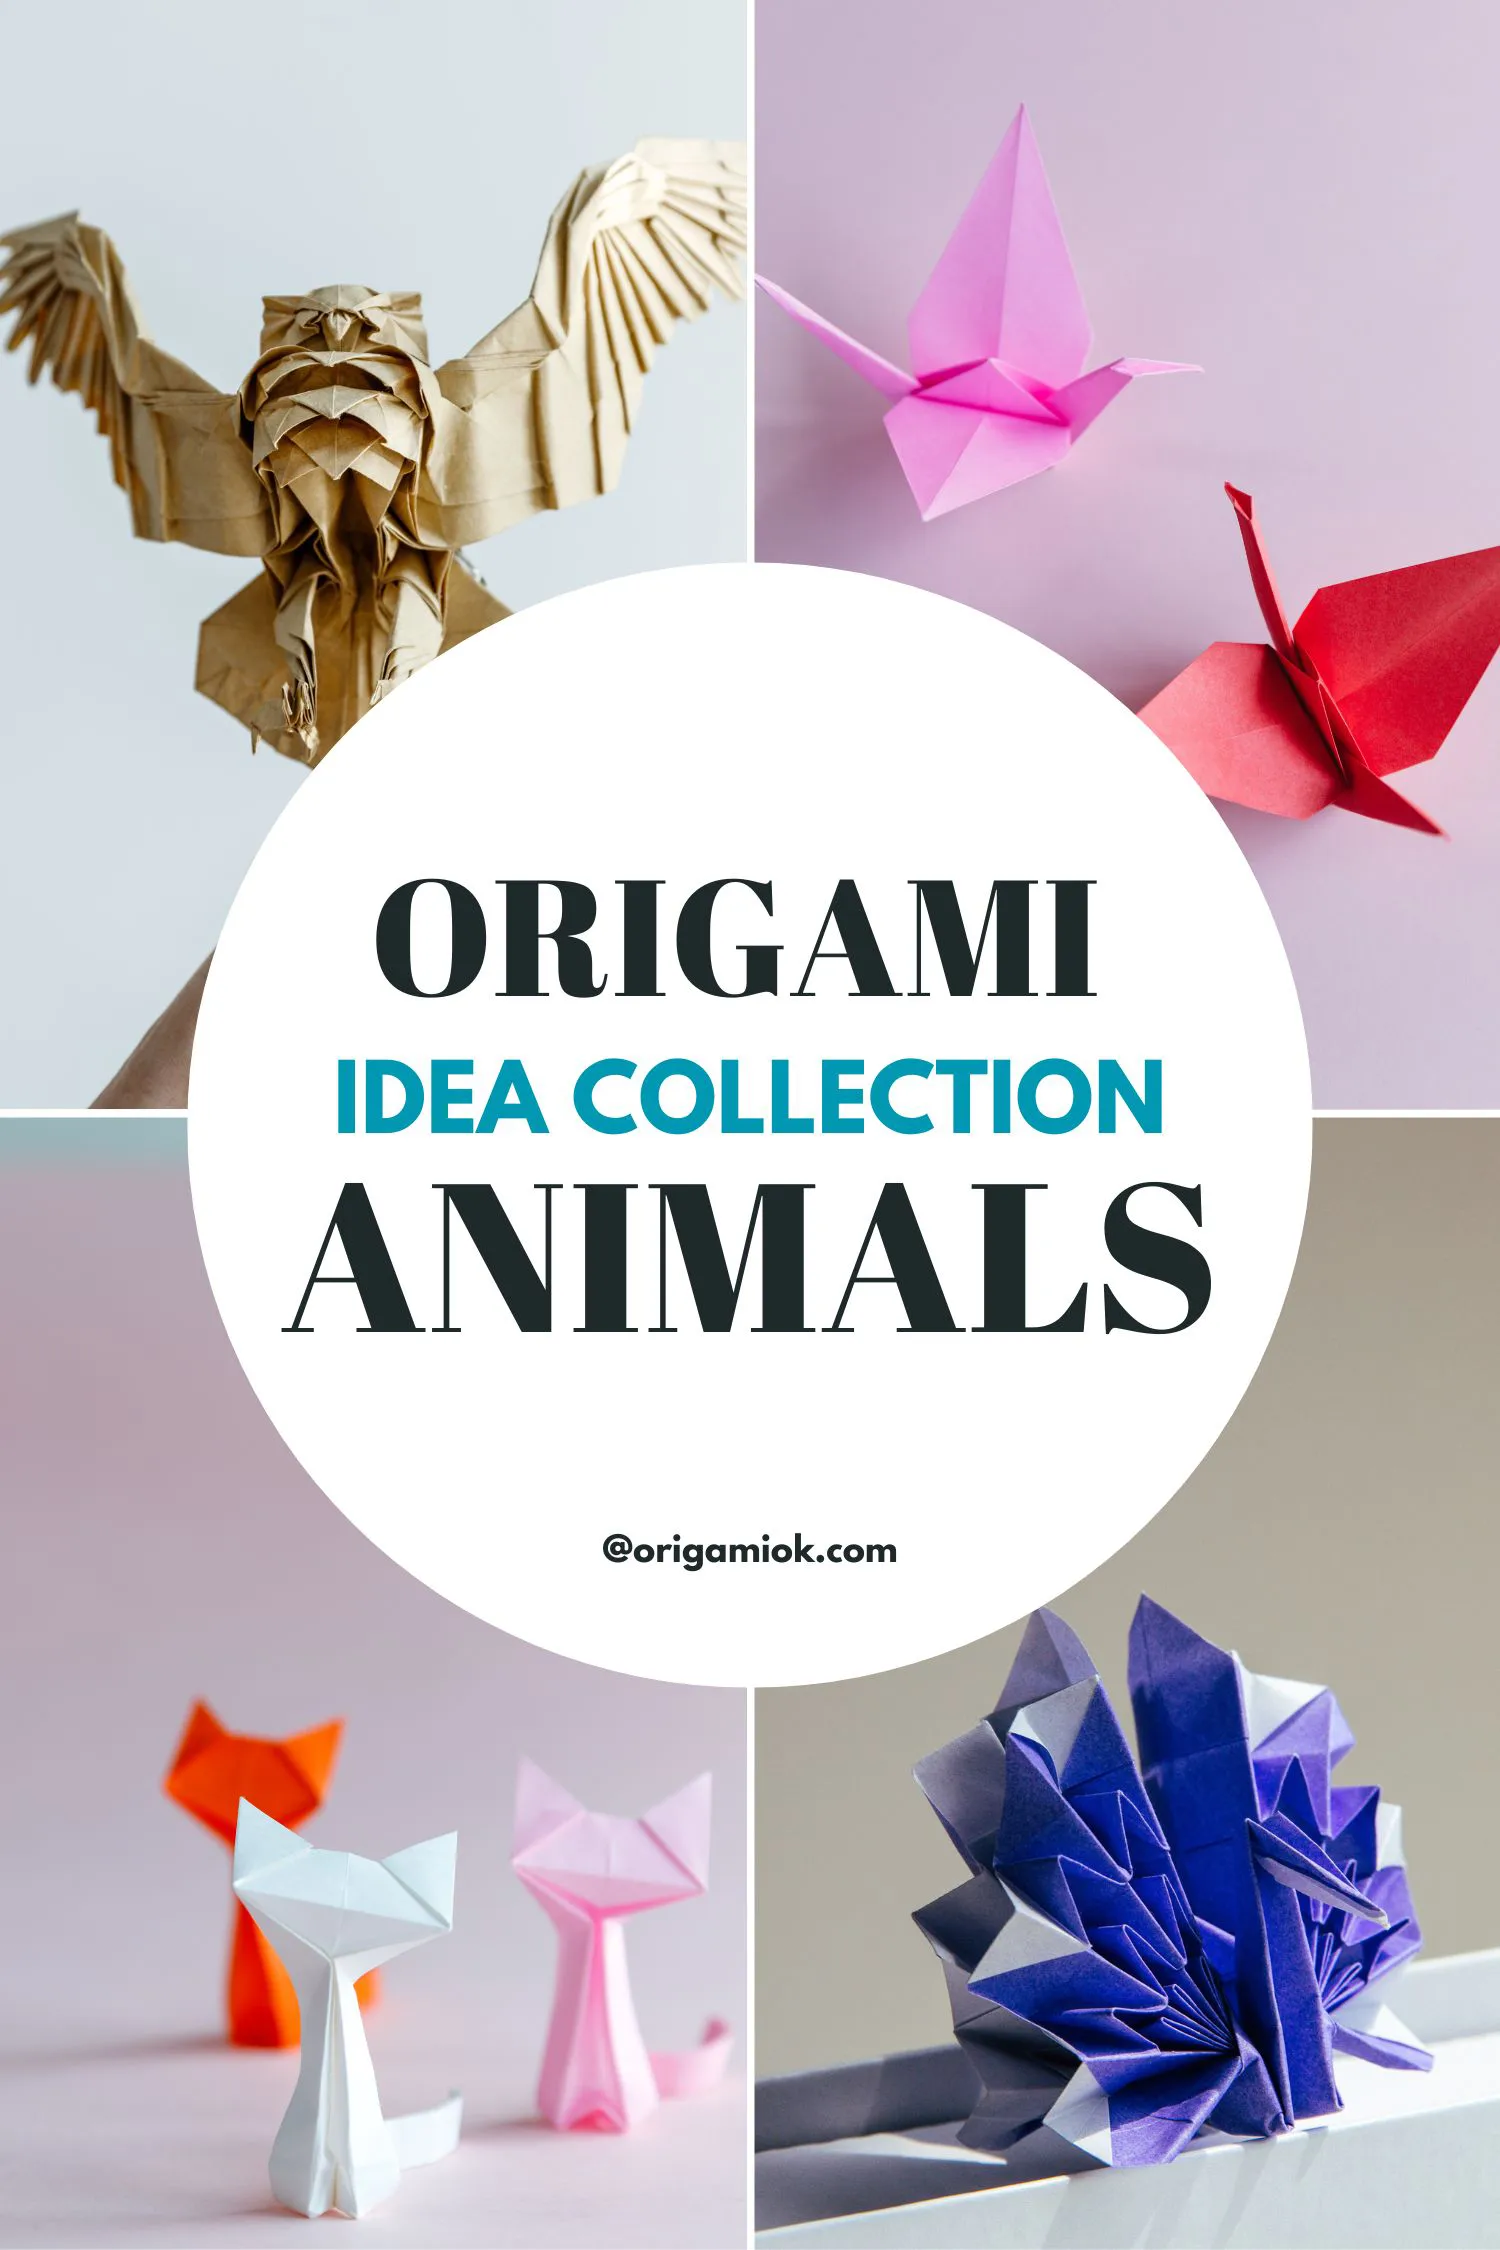 origami animals | origamiok.com